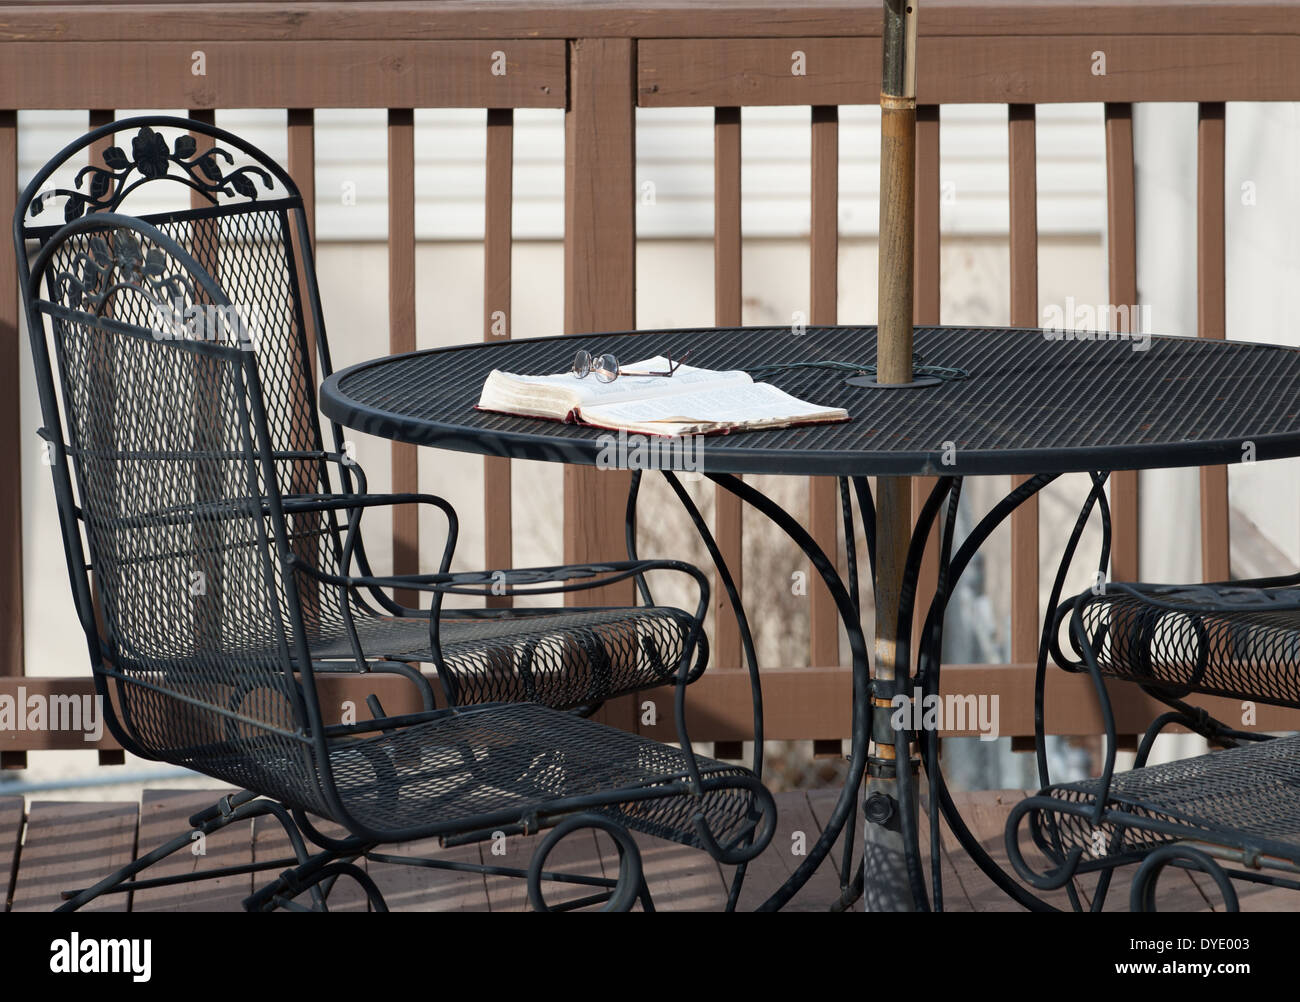 Une paire de lunettes de lecture se trouve au sommet d'une Bible ouverte portant sur une table en fer forgé sur une terrasse en bois avec chaises assorties. Banque D'Images